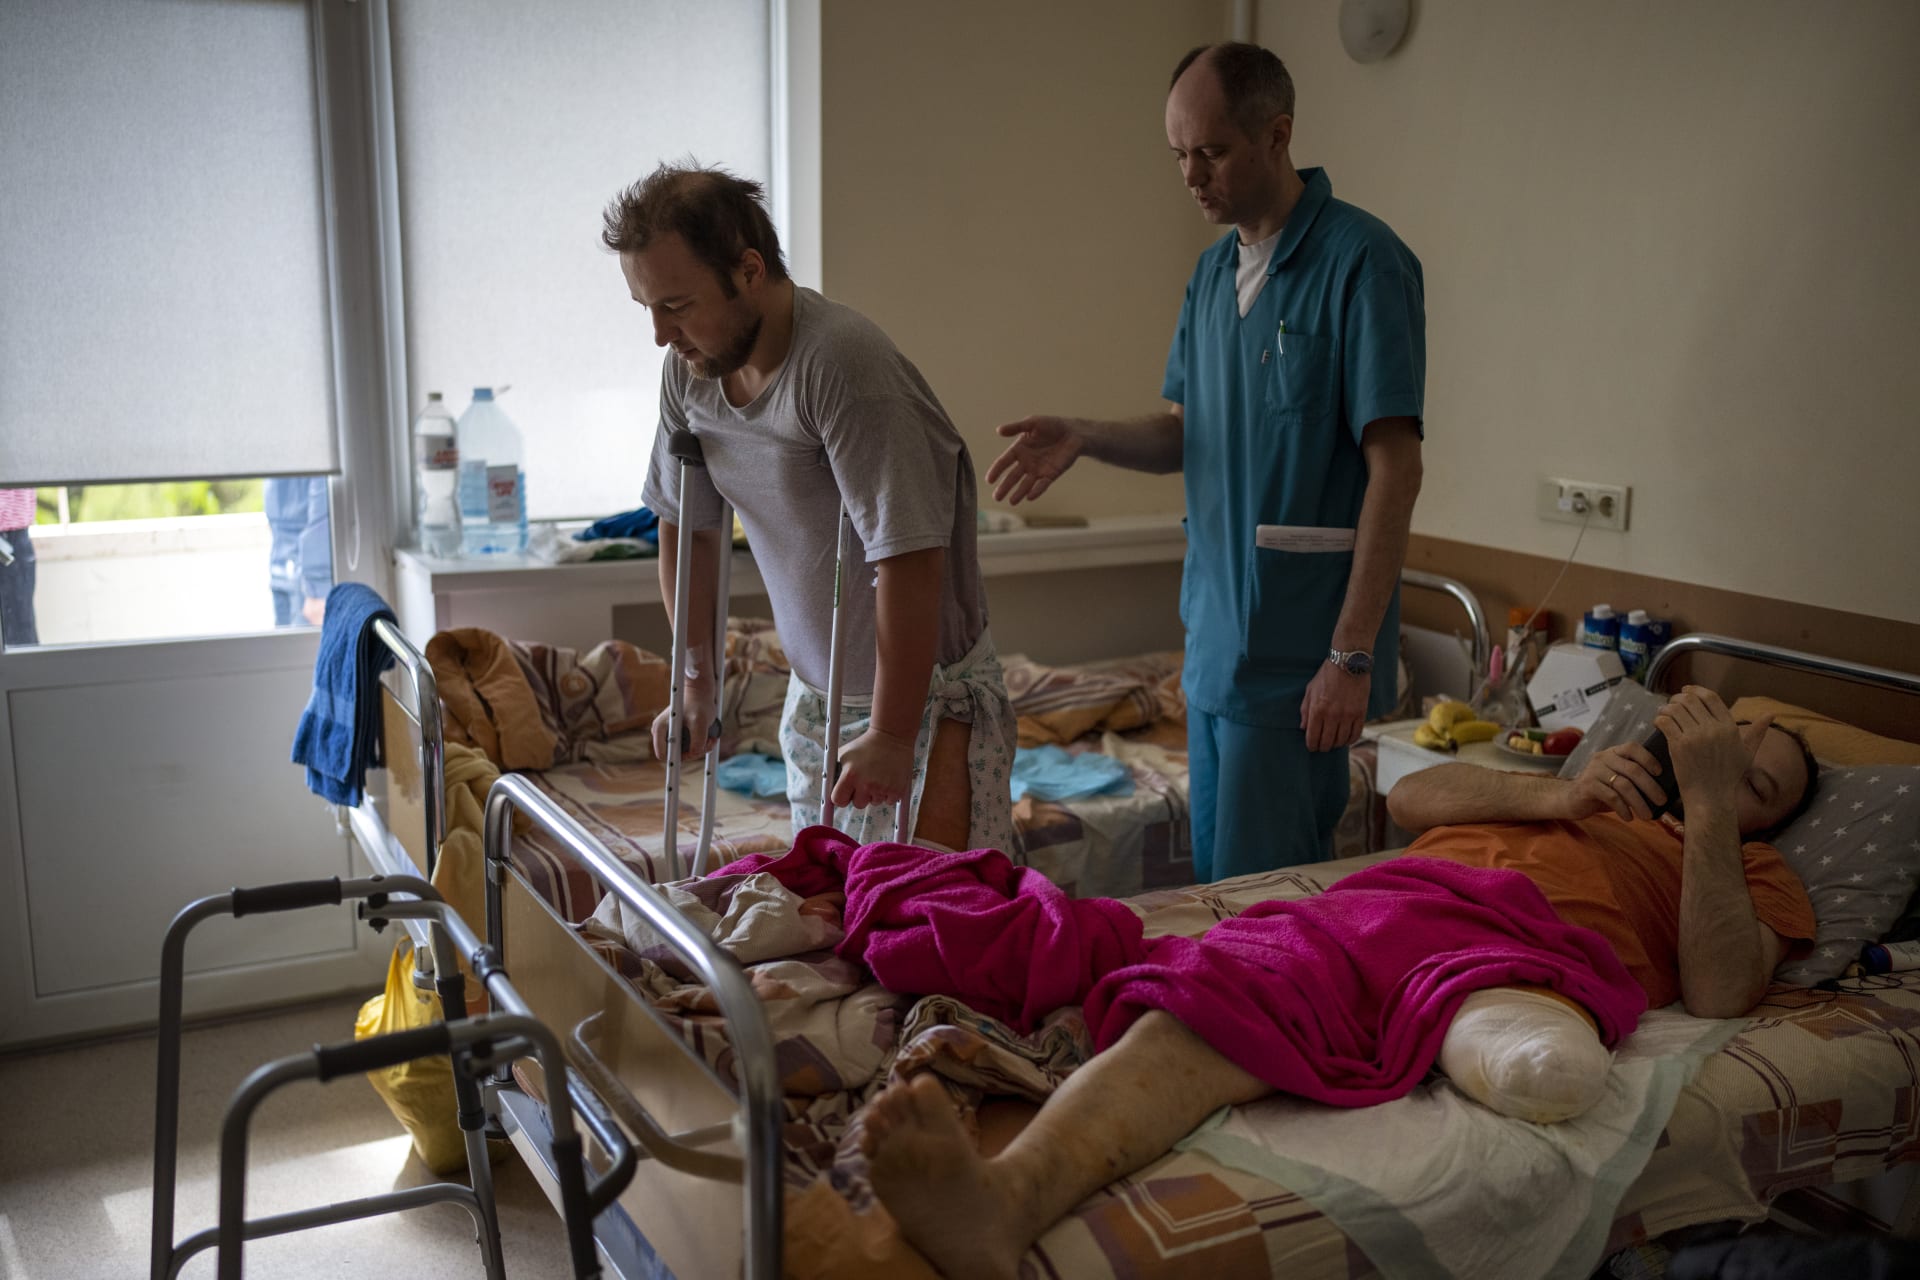 Saša Gorochivskyj podstupuje v kyjevské nemocnici tzv. zrcadlovou terapii pro zmírnění fantomové bolesti.